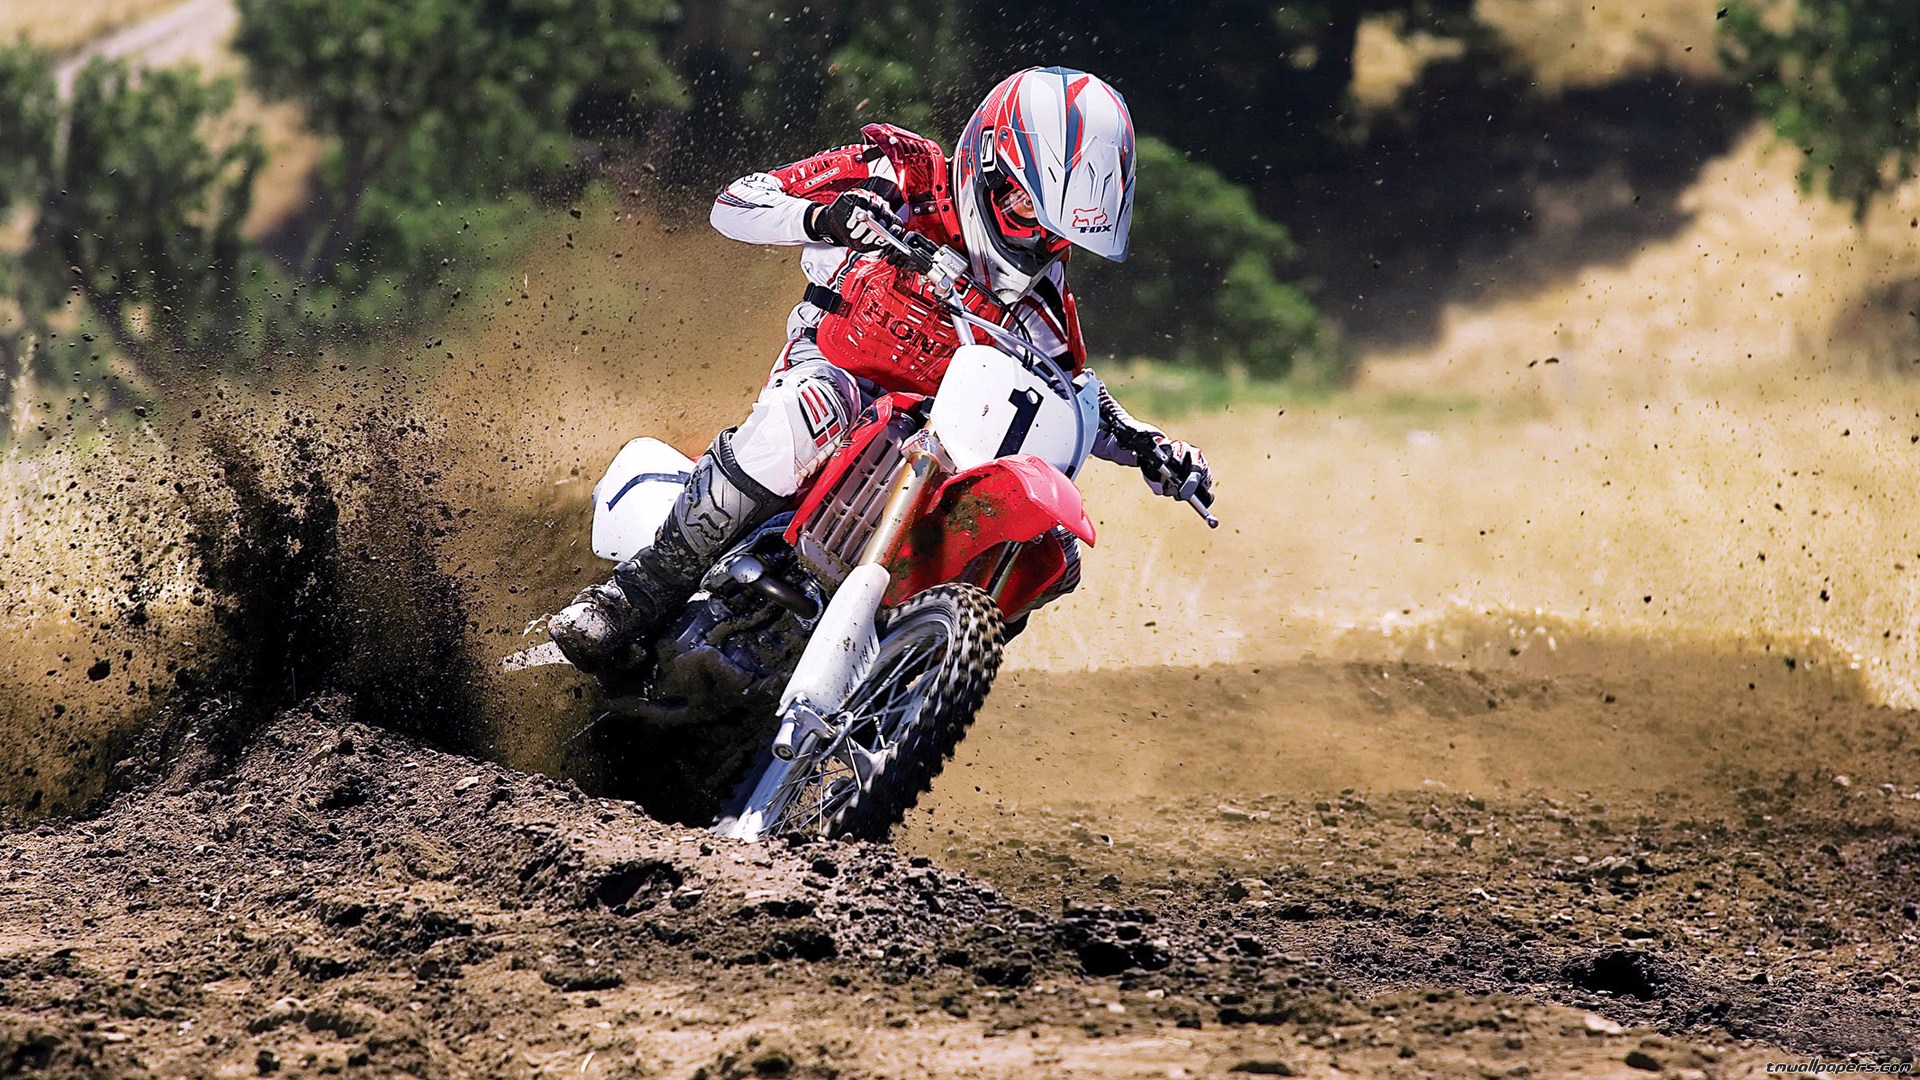 Hd Wallpaper Motocross - High Quality Dirt Bike - HD Wallpaper 